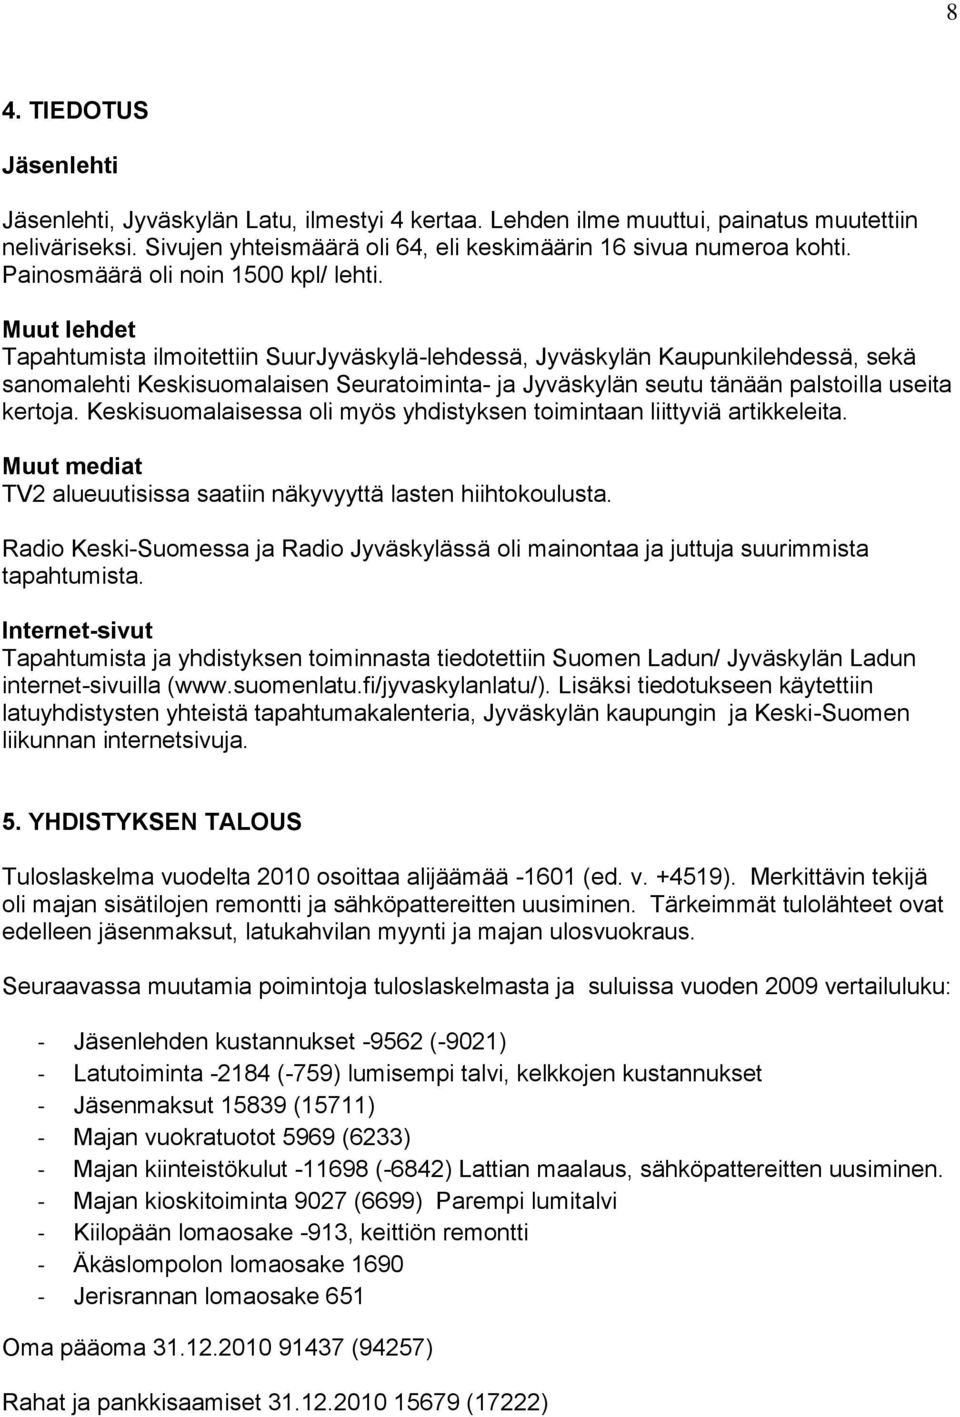 Muut lehdet Tapahtumista ilmoitettiin SuurJyväskylä-lehdessä, Jyväskylän Kaupunkilehdessä, sekä sanomalehti Keskisuomalaisen Seuratoiminta- ja Jyväskylän seutu tänään palstoilla useita kertoja.